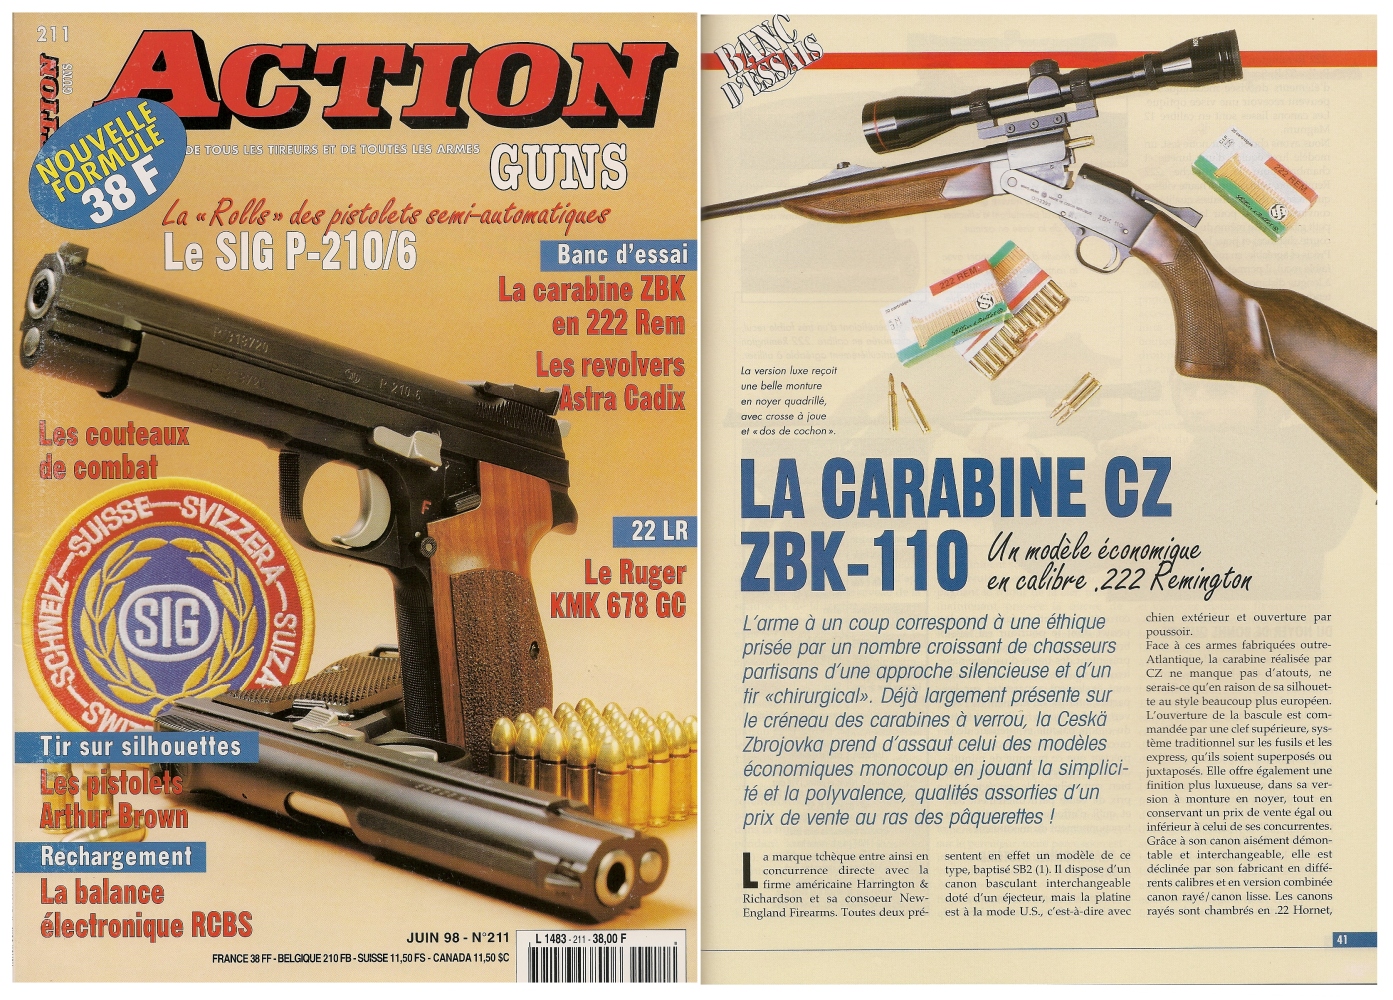 Le banc d'essai de la carabine CZ ZBK-110 a été publié sur 4 pages dans le magazine Action Guns n°211 (juin 1998).